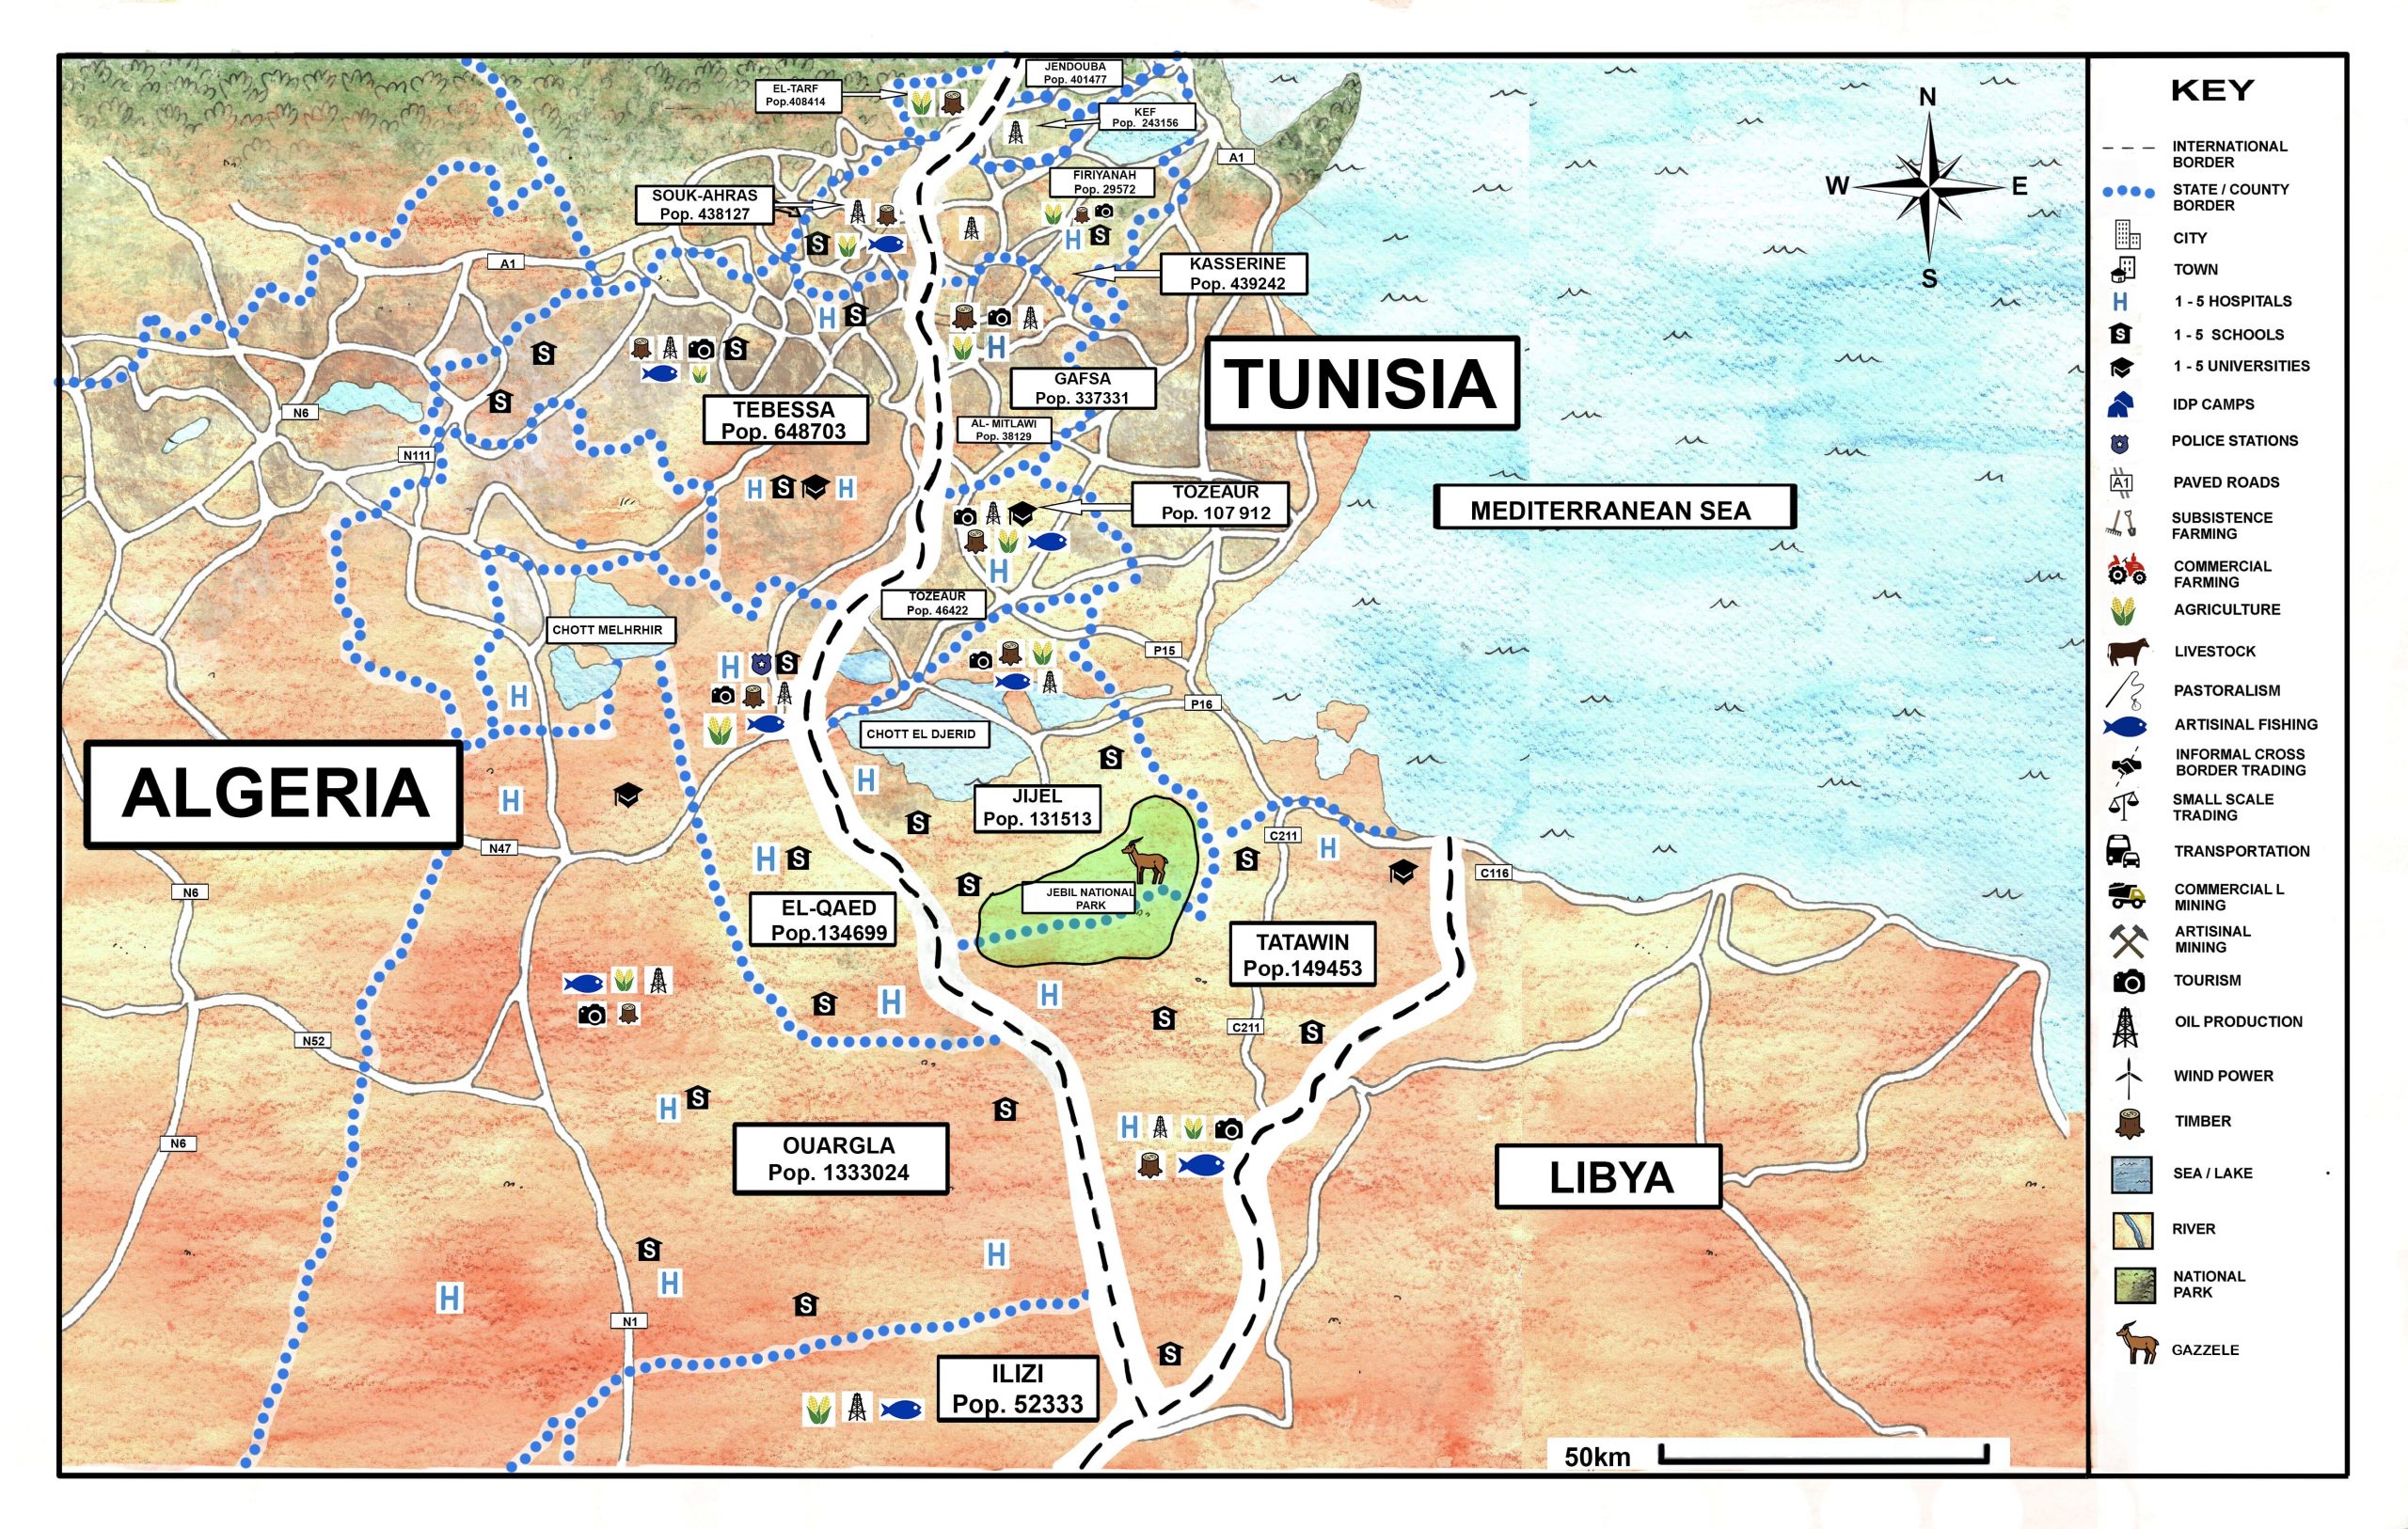 ALGERIA - TUNISIA_illustration